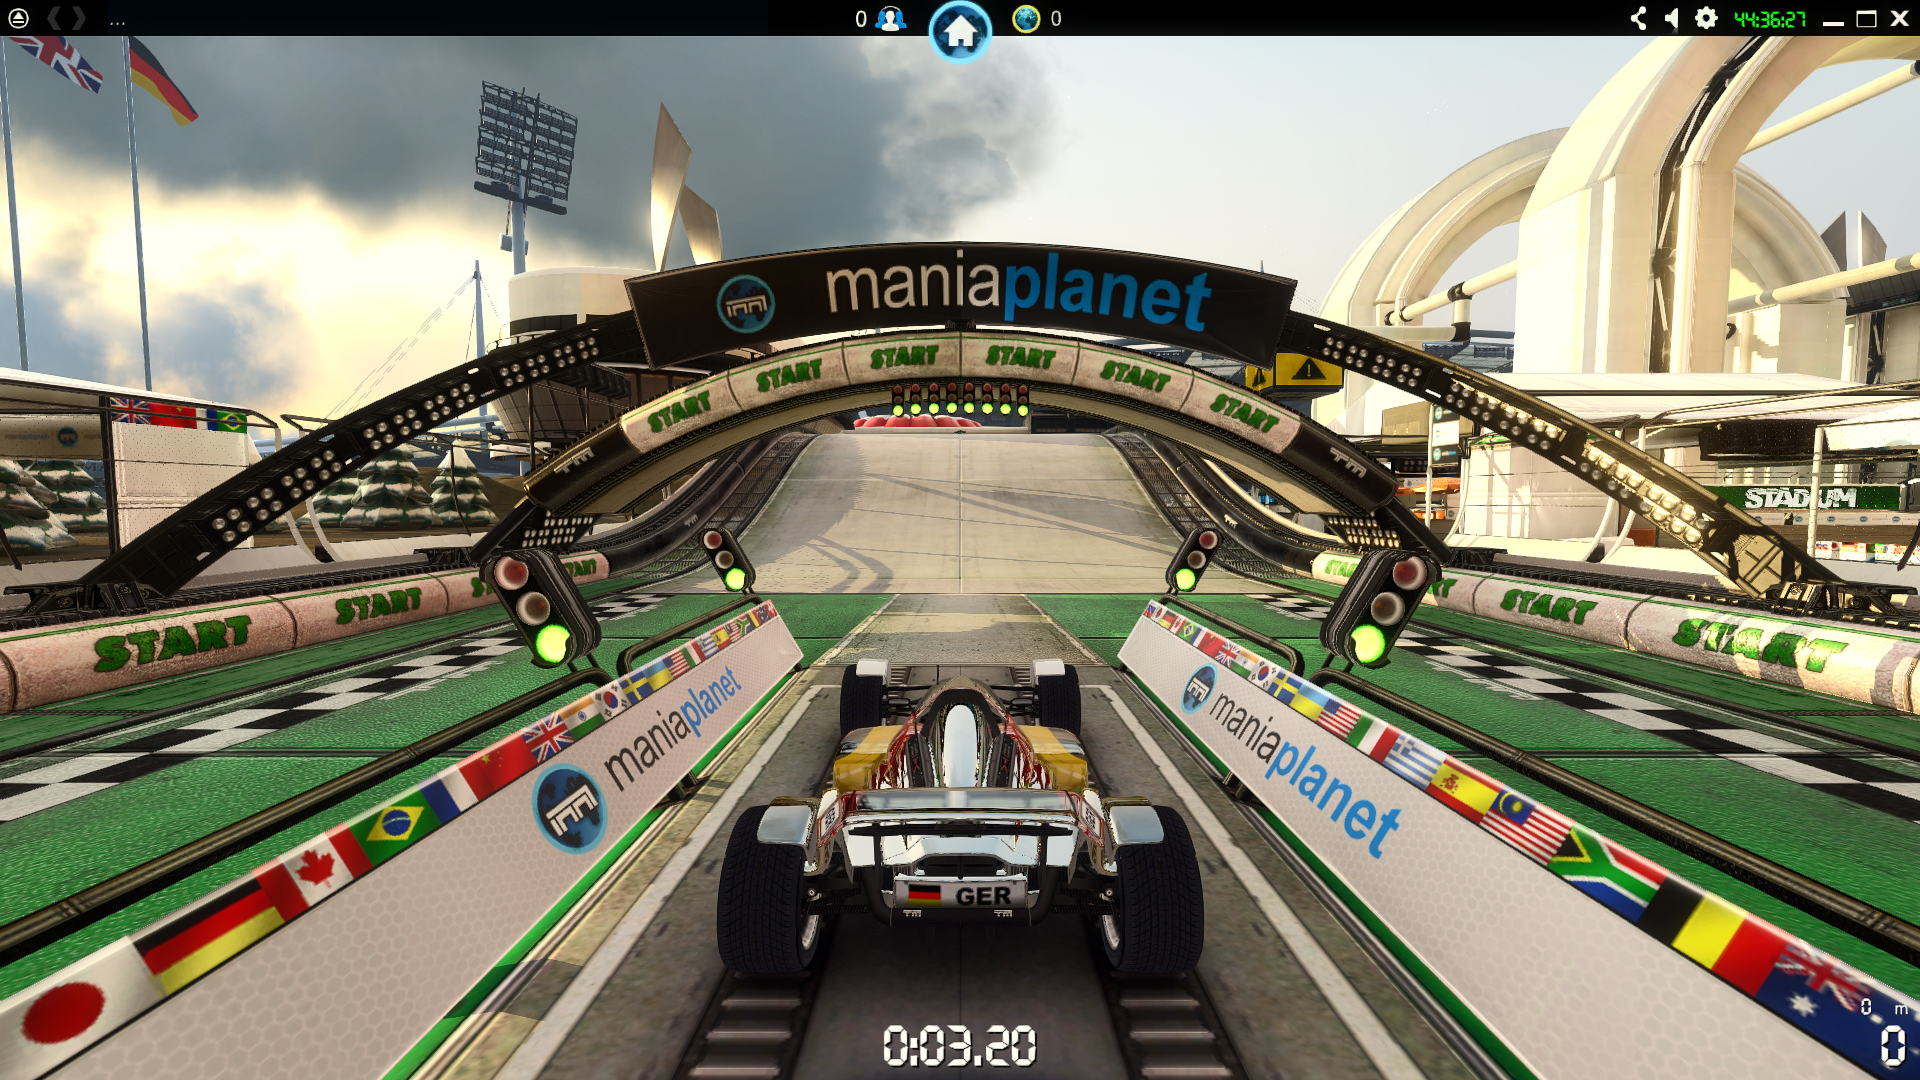 trackmania 2 stadium manual update